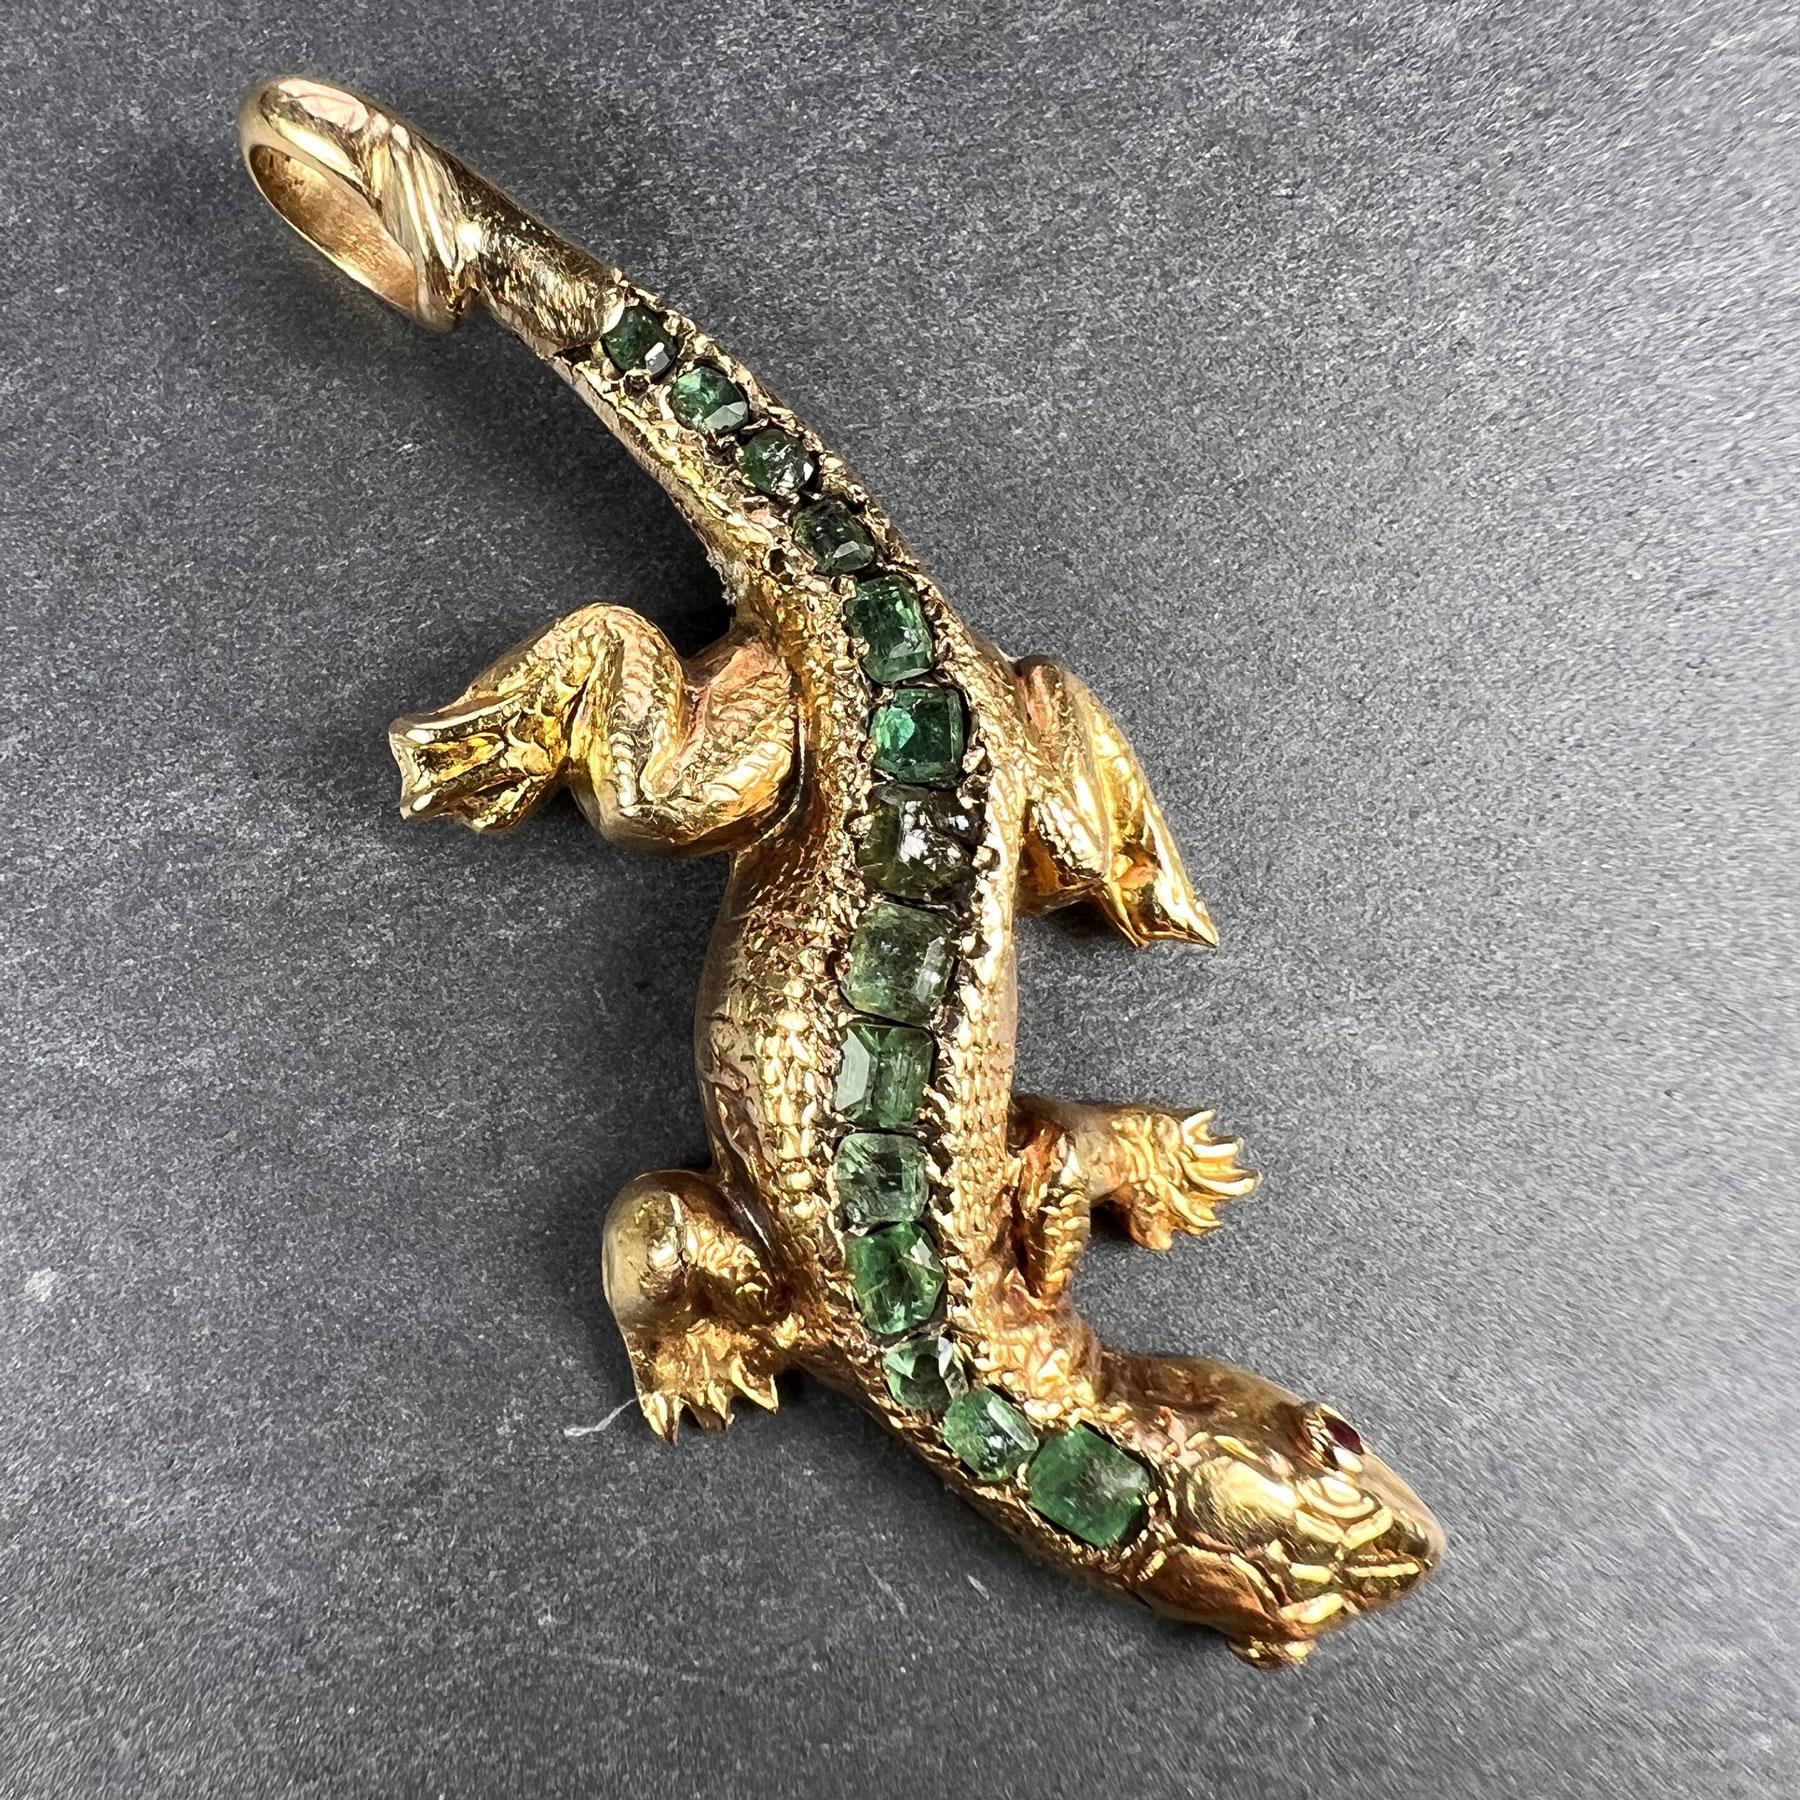 Ein realistisch modellierter antiker Salamander- oder Eidechsenanhänger aus 18 Karat (18K) Gelbgold mit ziselierten Schuppendetails, besetzt mit 14 Smaragden im Smaragdschliff auf dem Rücken, mit Cabochon-Rubinaugen. Die Smaragde sind etwas